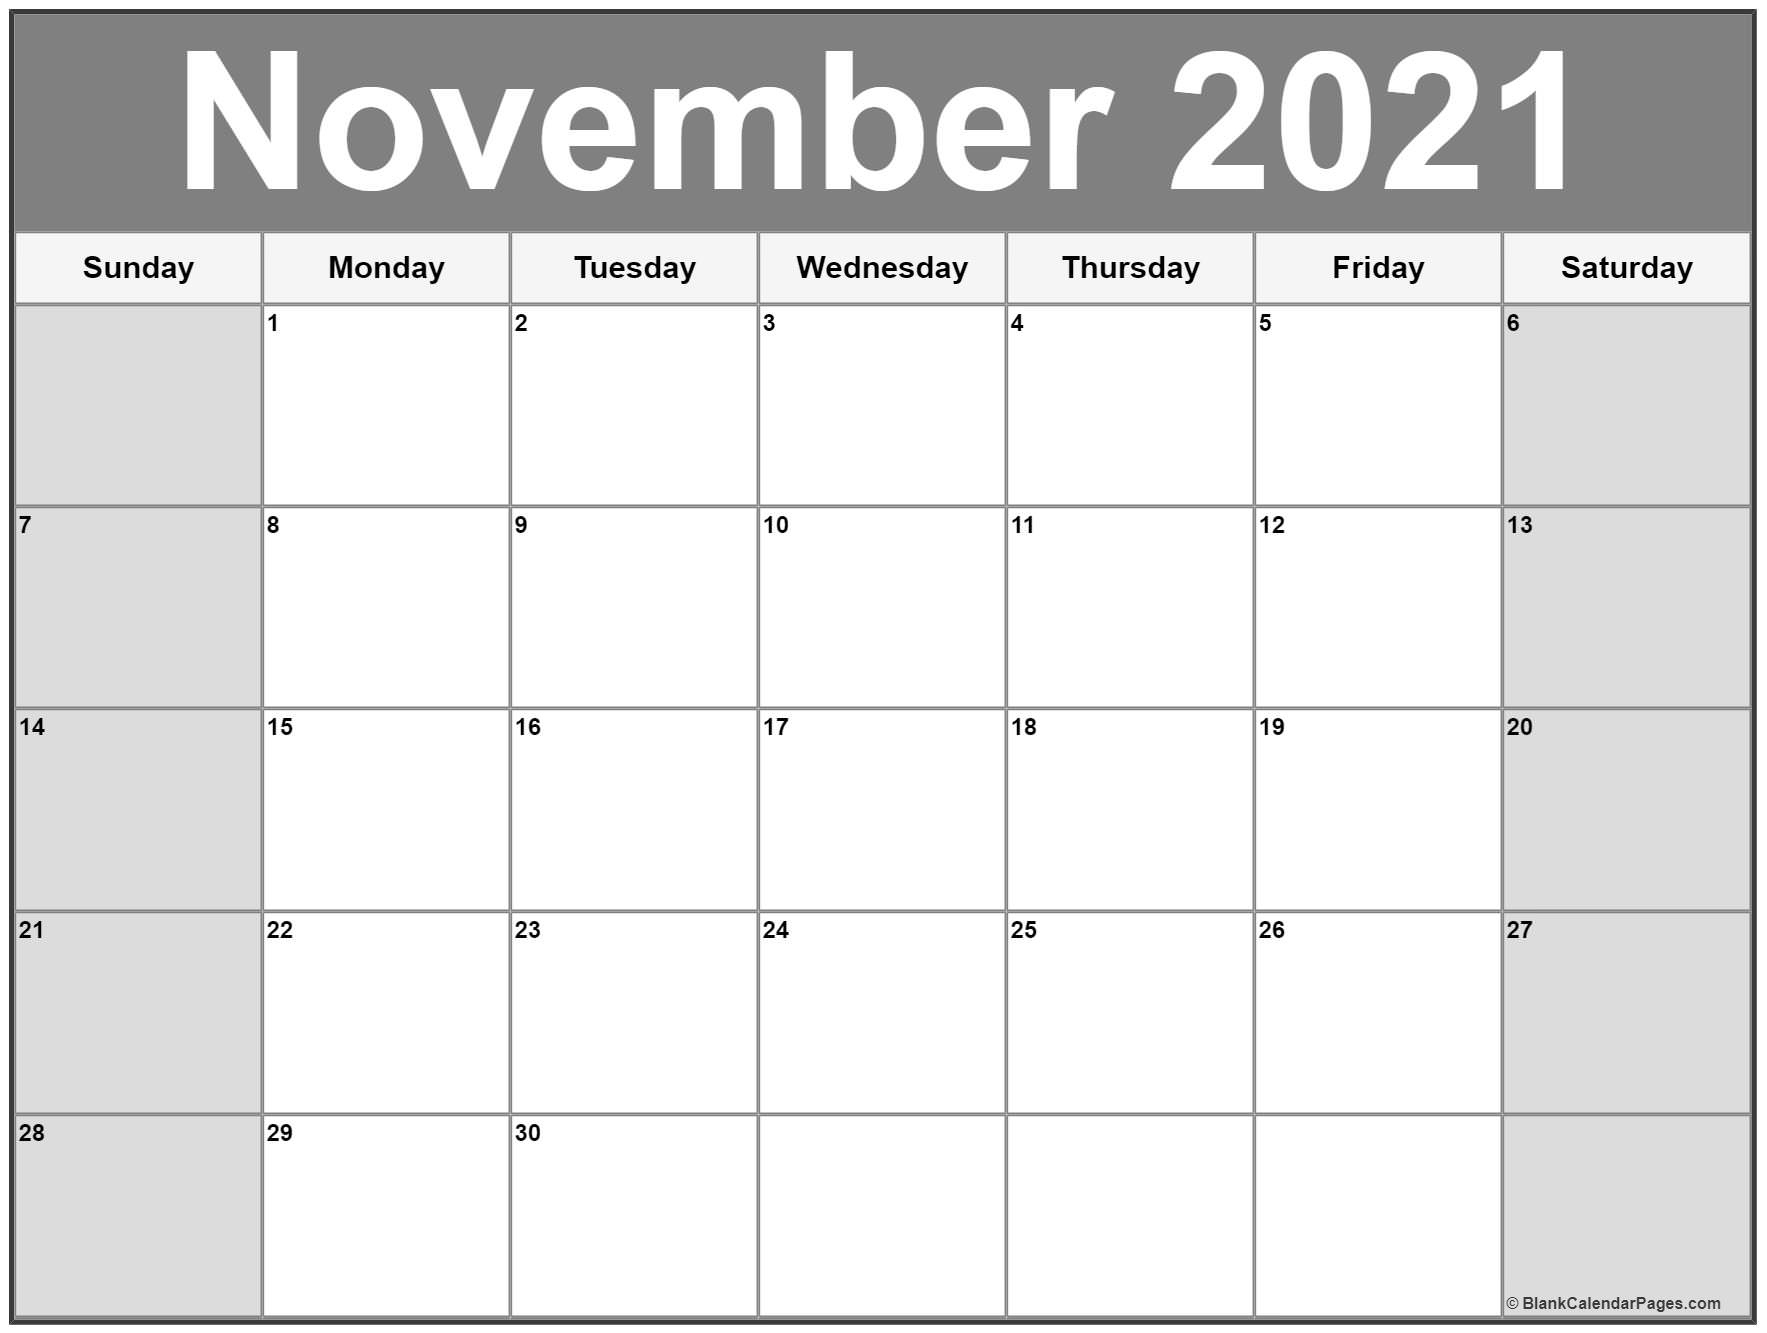 November 2021 Calendar | 56+ Templates Of 2021 Printable Calendars November 2021 Calendar Free Printable